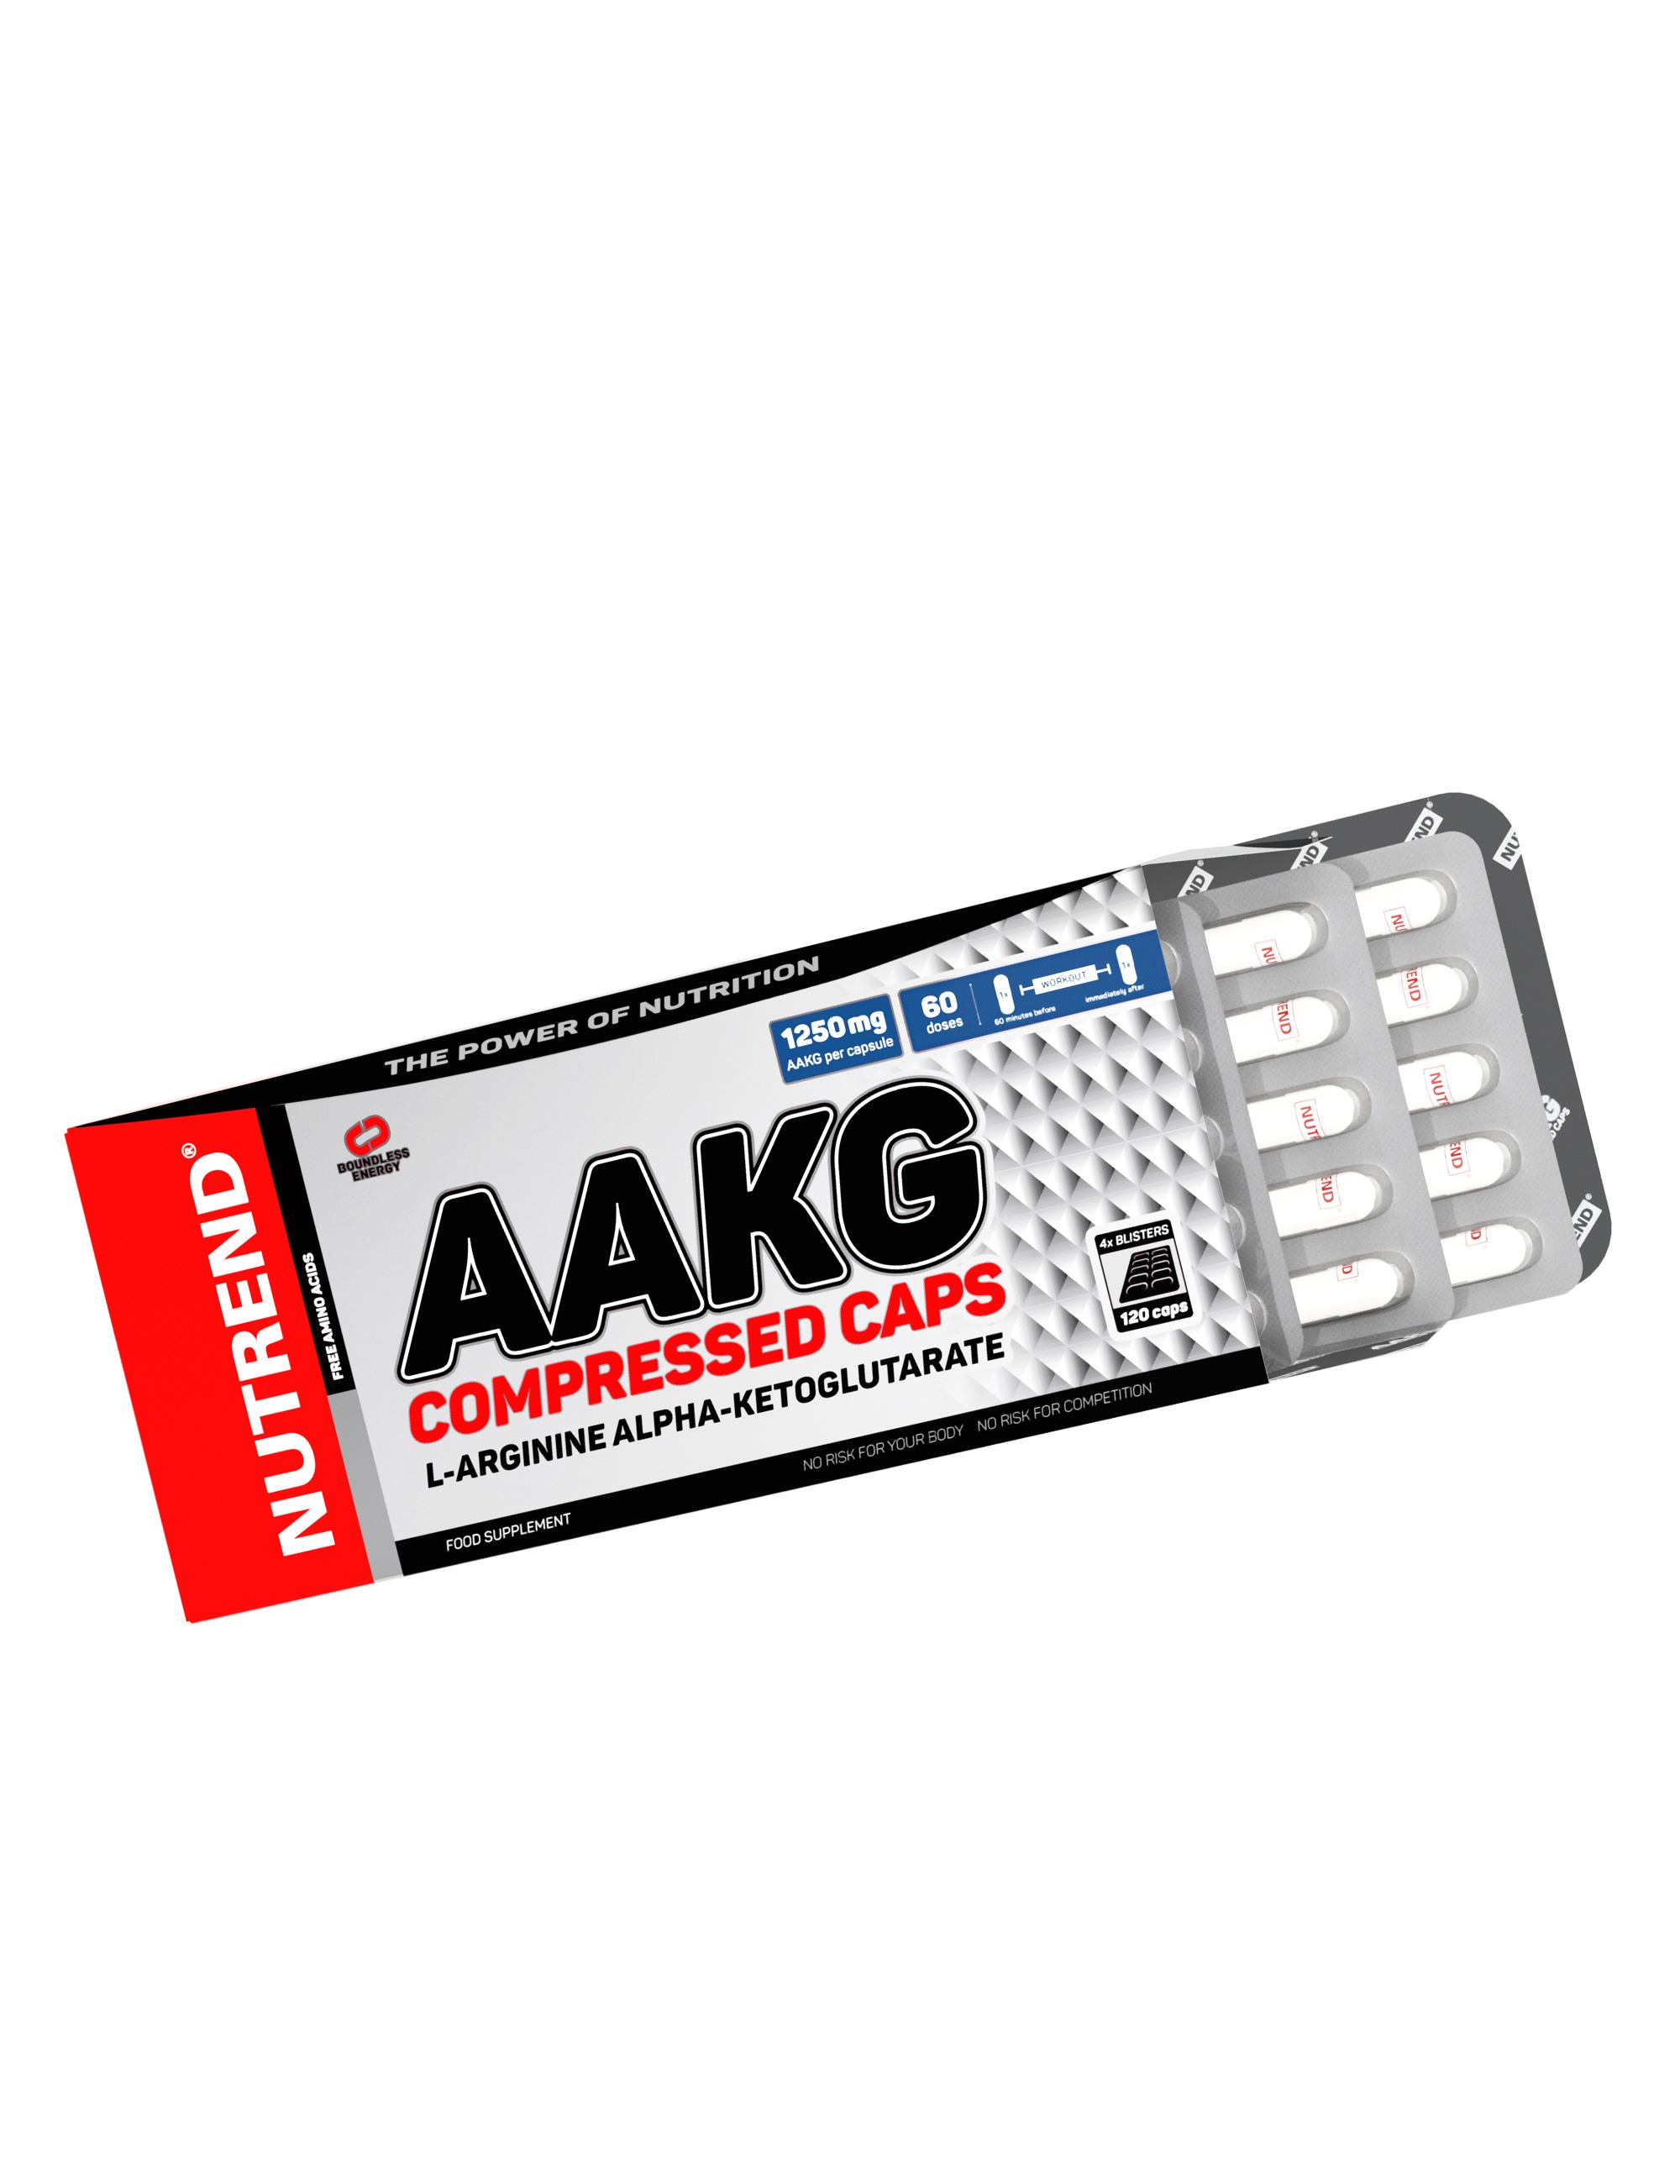 AAKG Compressed Caps 120caps